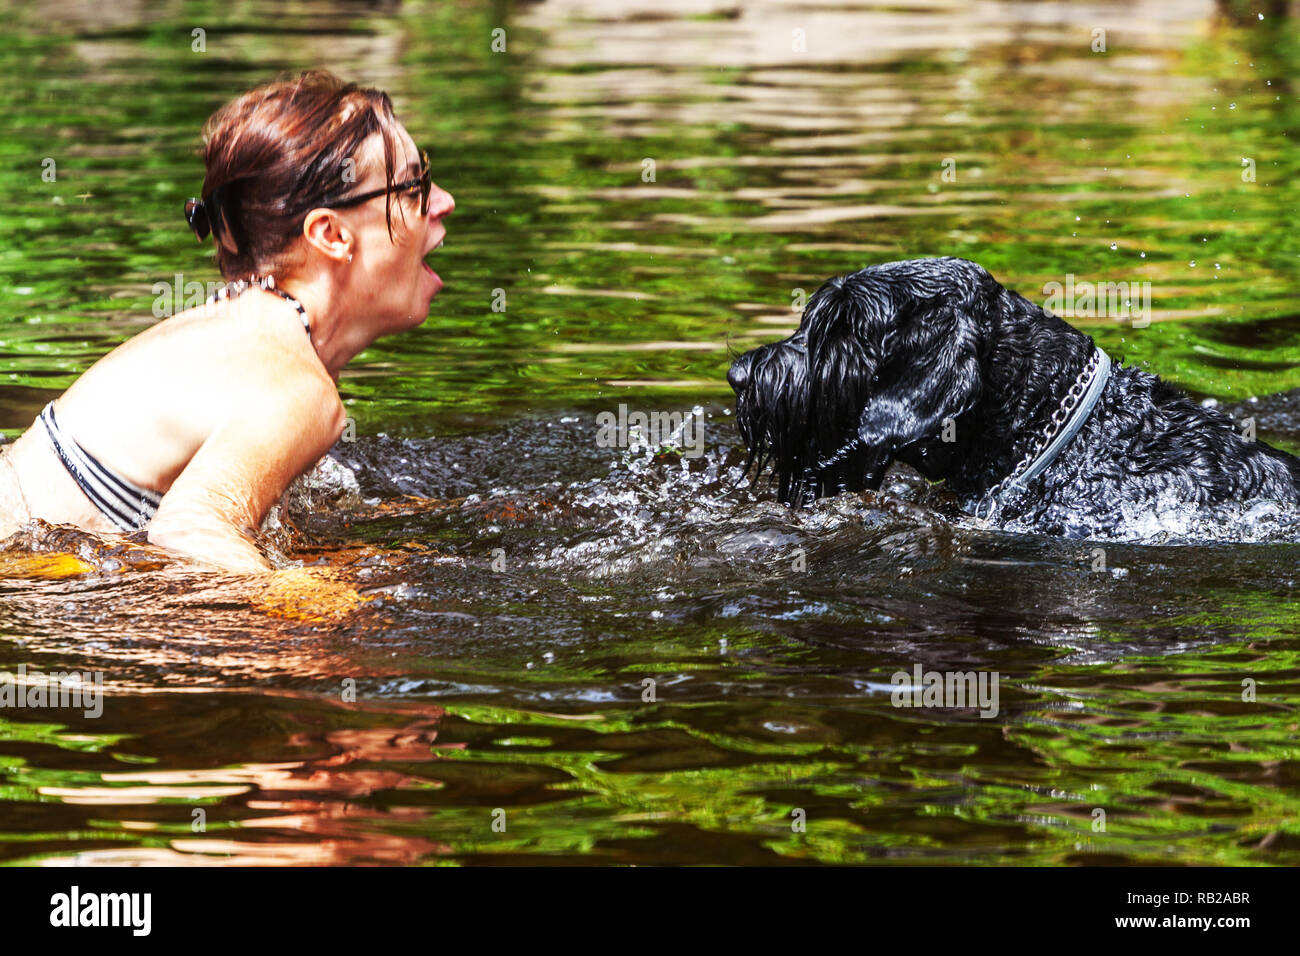 Frau und schwarzer Schnauzer Hund im Wasser, Sommerurlaub am Fluss, Tschechische Republik Hund Frau von Angesicht zu Angesicht Stockfoto